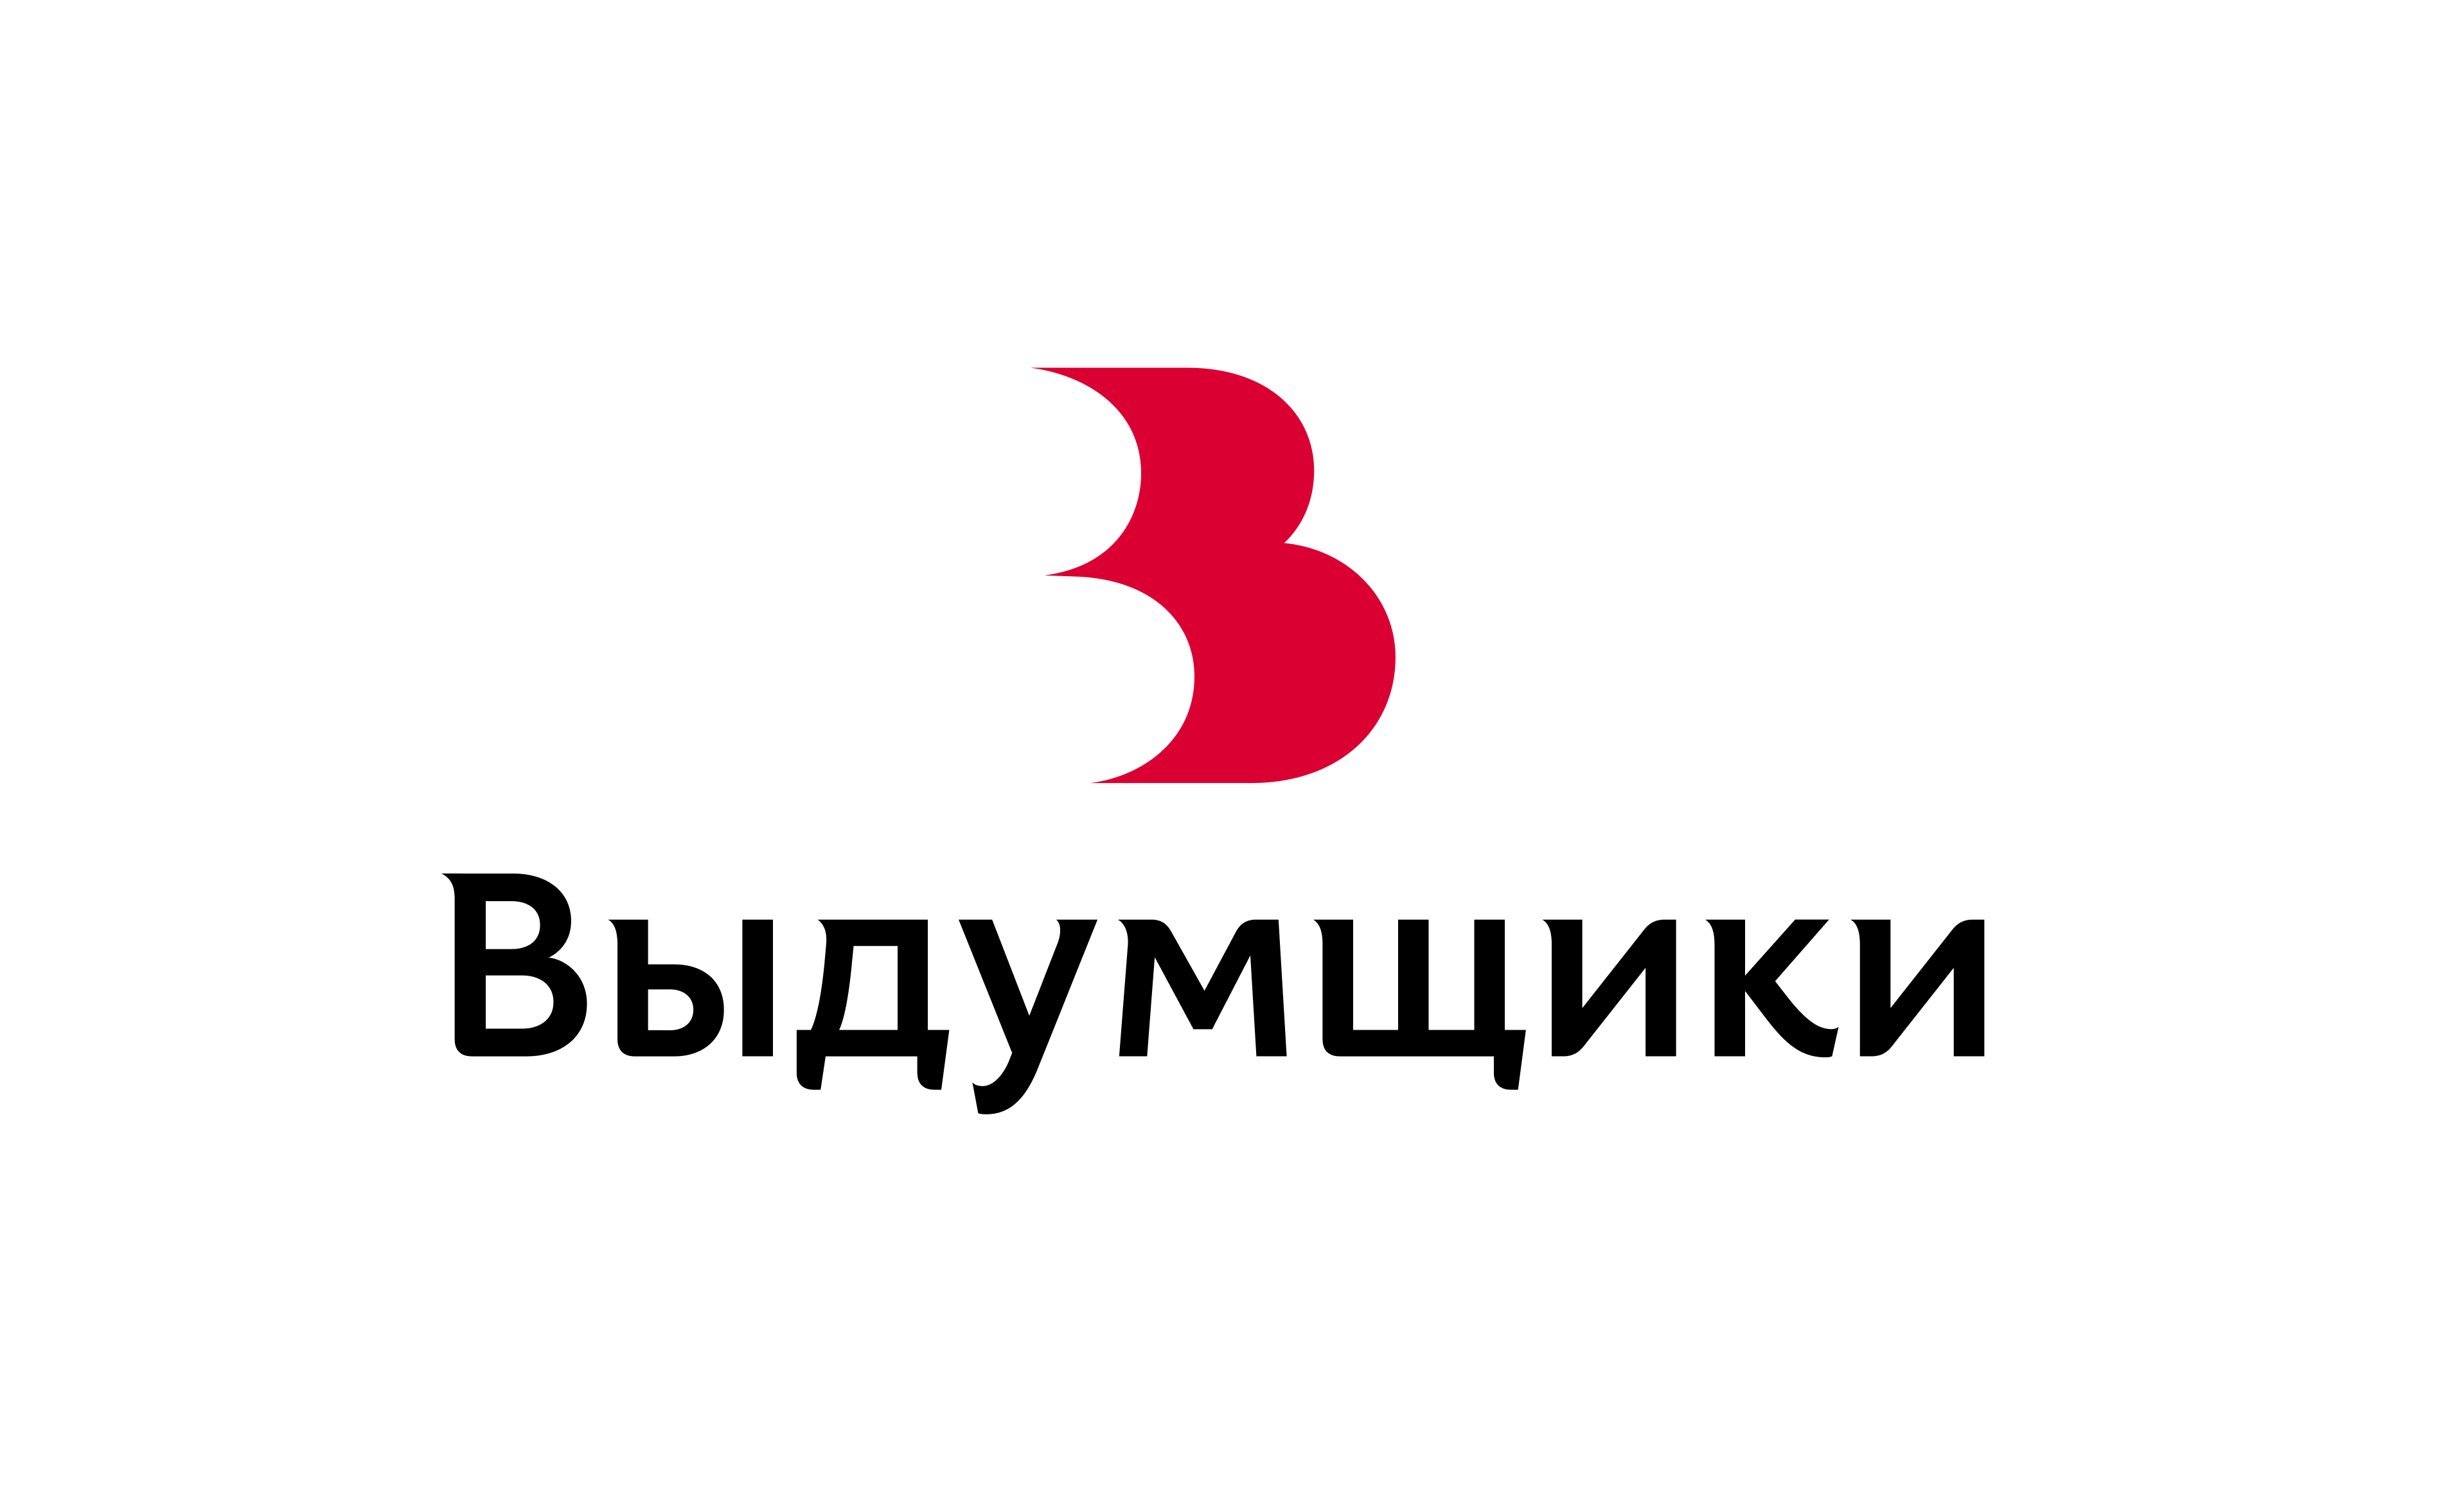 vydumschiki identity logo